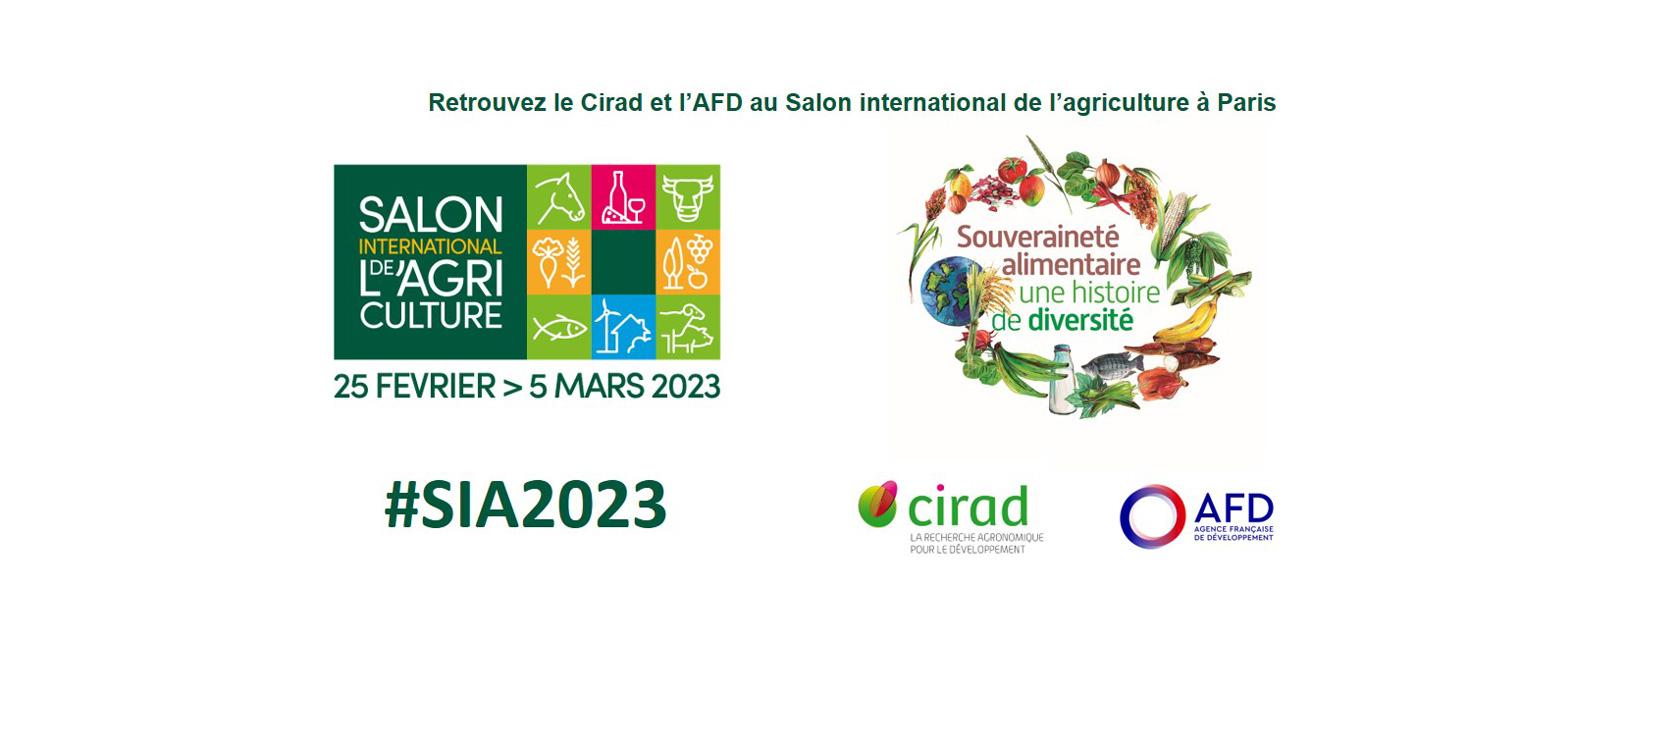 L’AFD sera présente au Salon International de l’Agriculture 2023 et organise avec la Cedeao, le Cirad et le Roppa une conférence intitulée “L’Afrique nourrit les Africains”